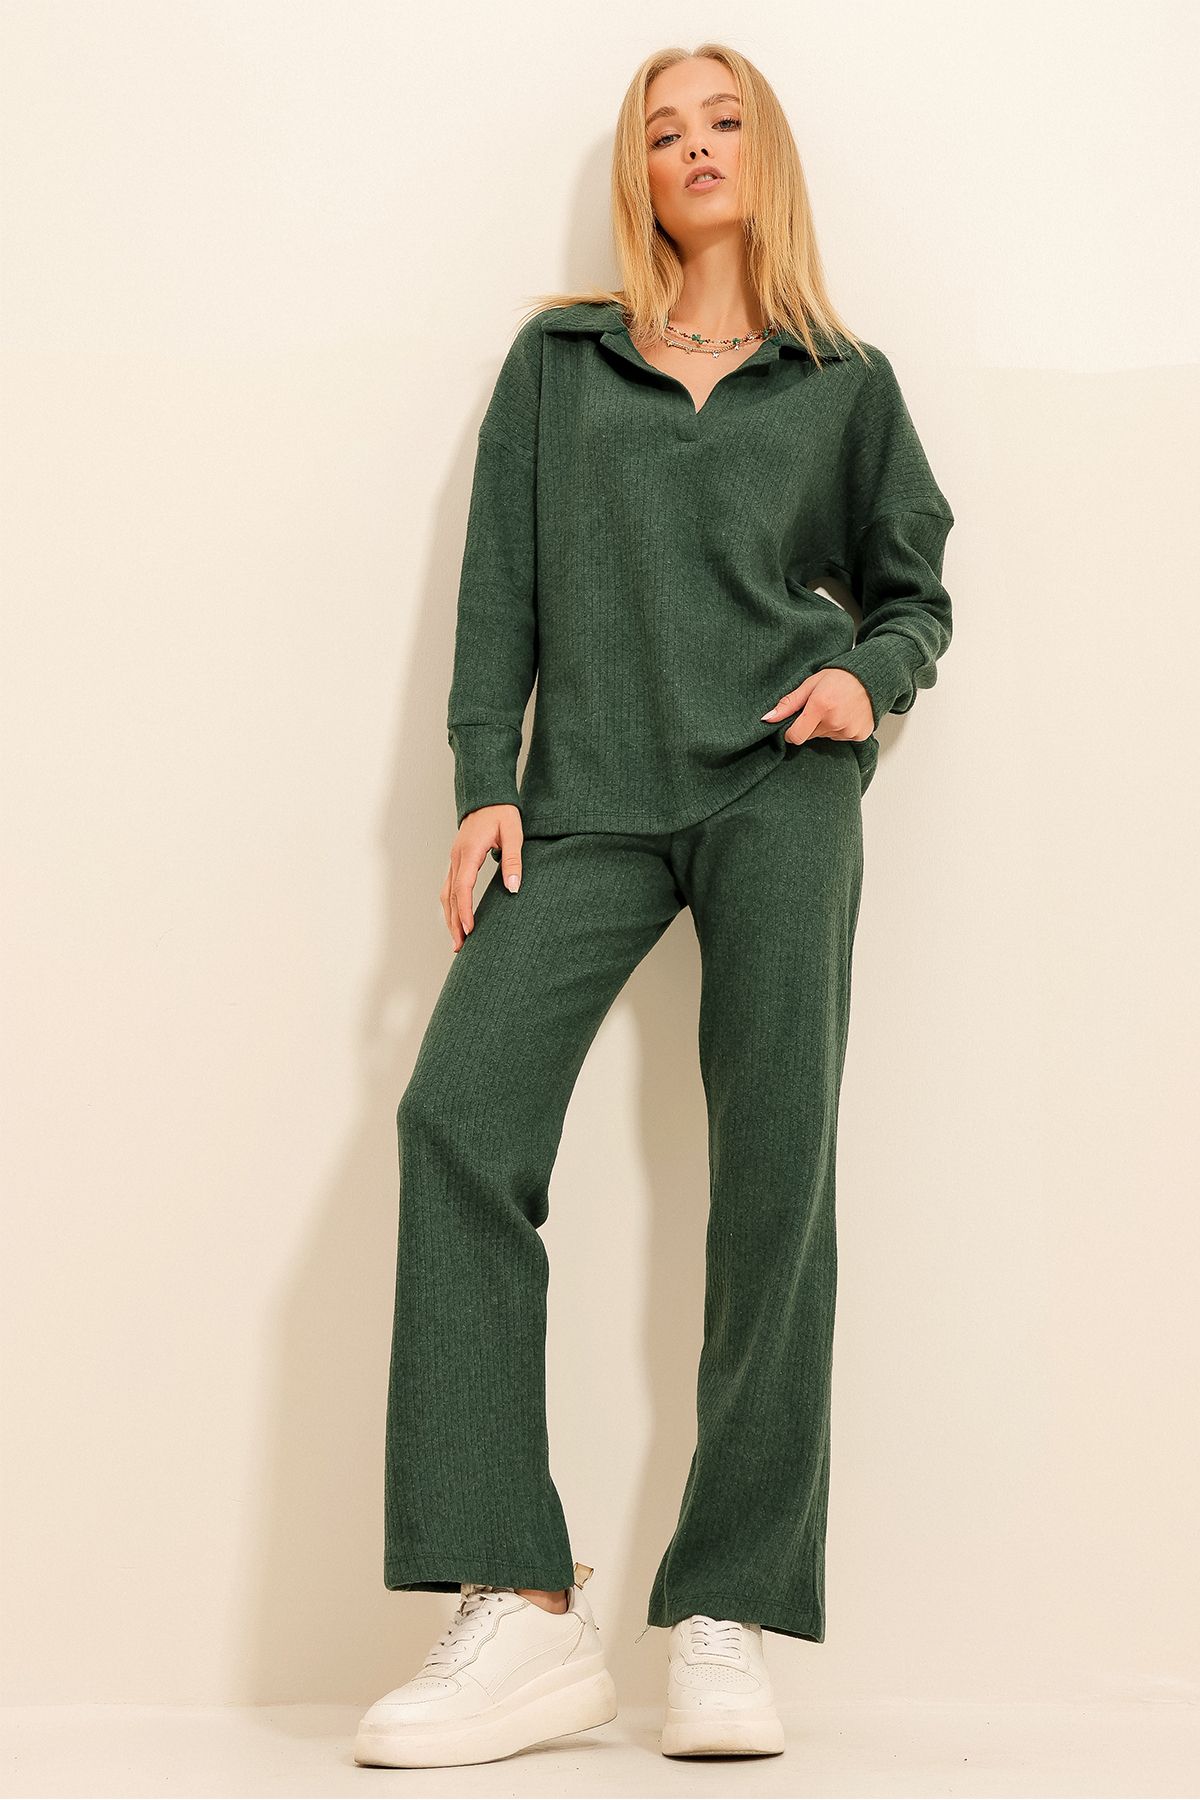 Trend Alaçatı Stili Kadın Ceviz Yeşili Polo Yaka Üst Ve Palazzon Pantolon Triko Alt Üst Takım ALC-796-001